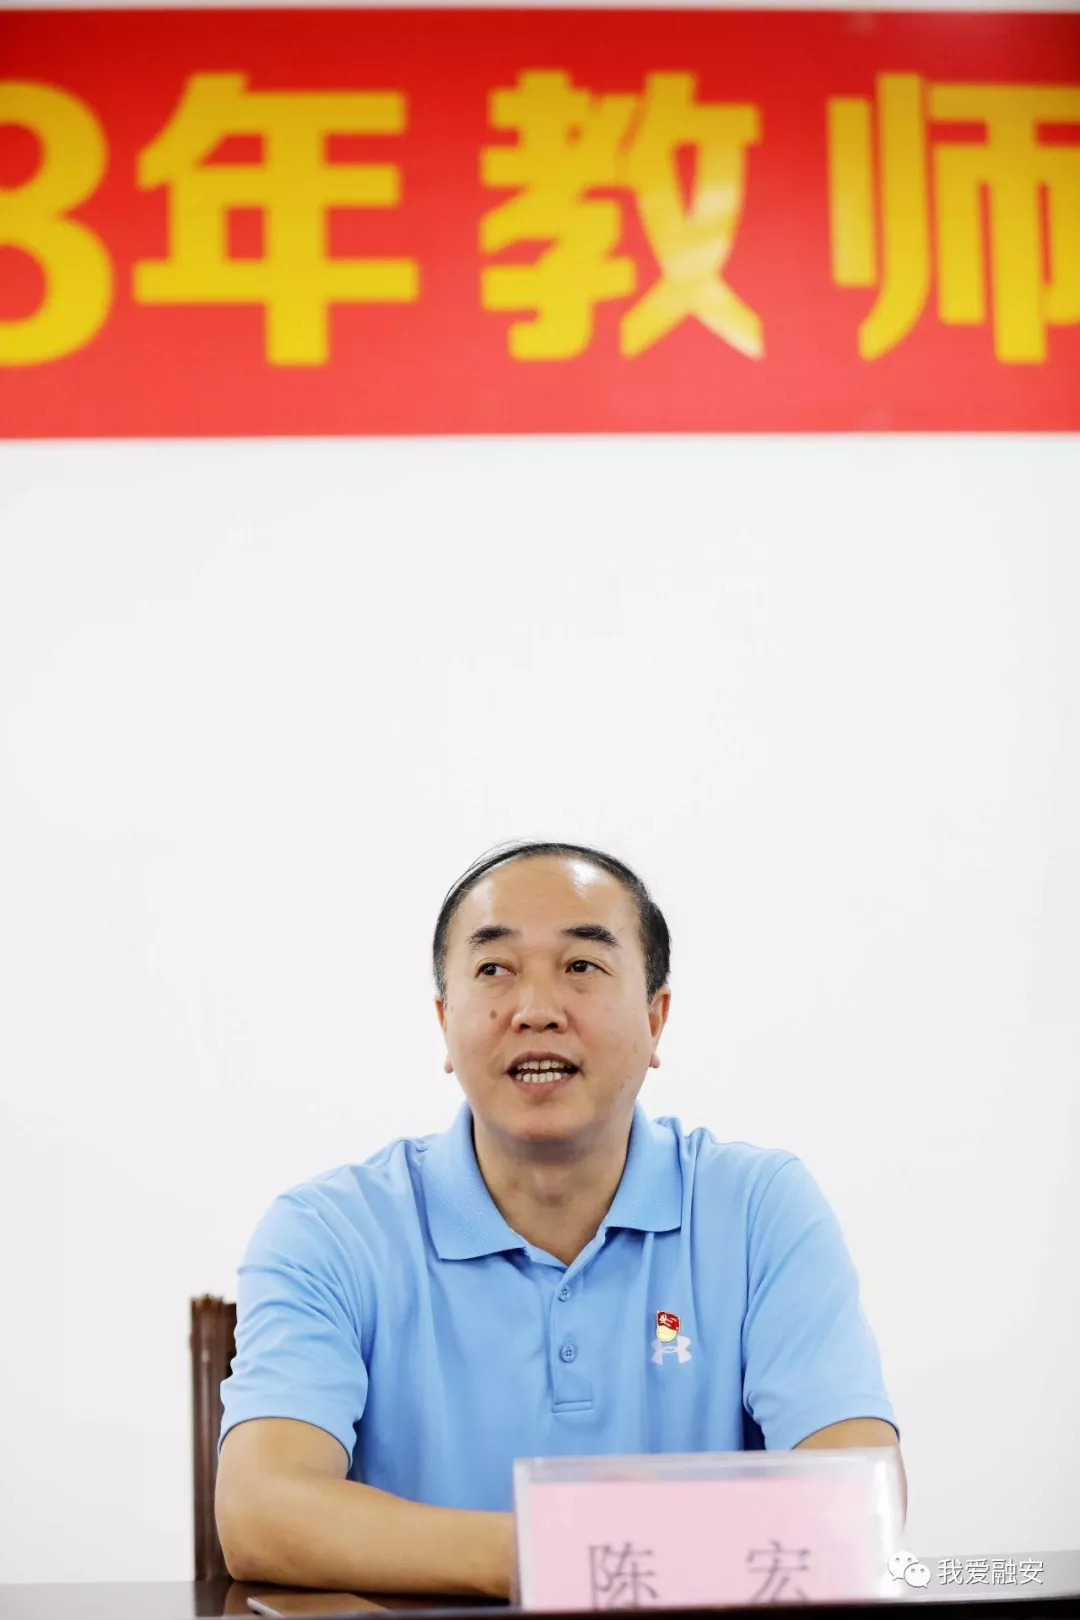 9月7日,县委书记陈宏在座谈会上讲话